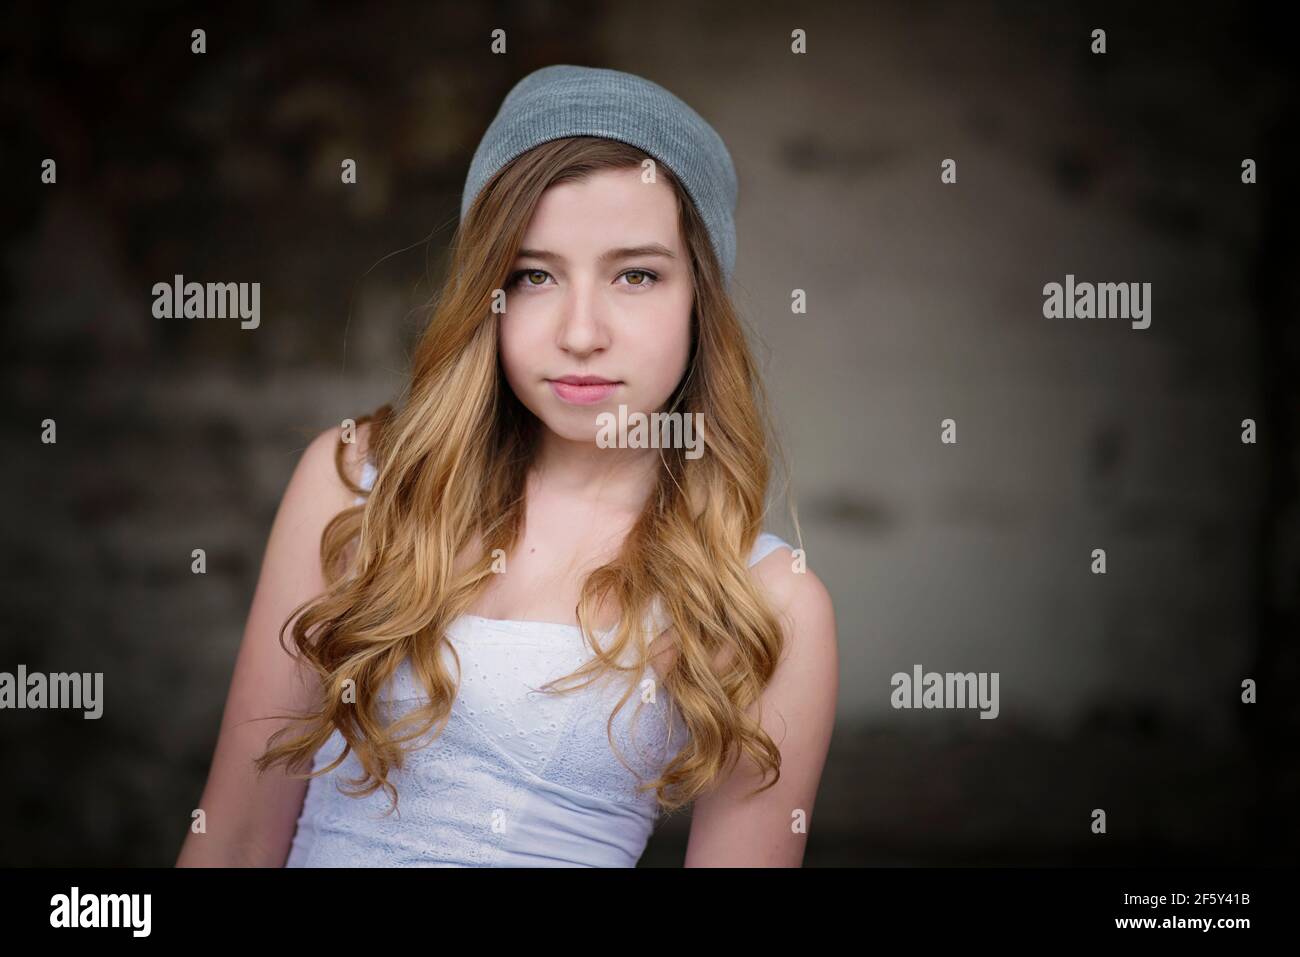 Cool teen girl wearing grey cap in urban setting. Stock Photo